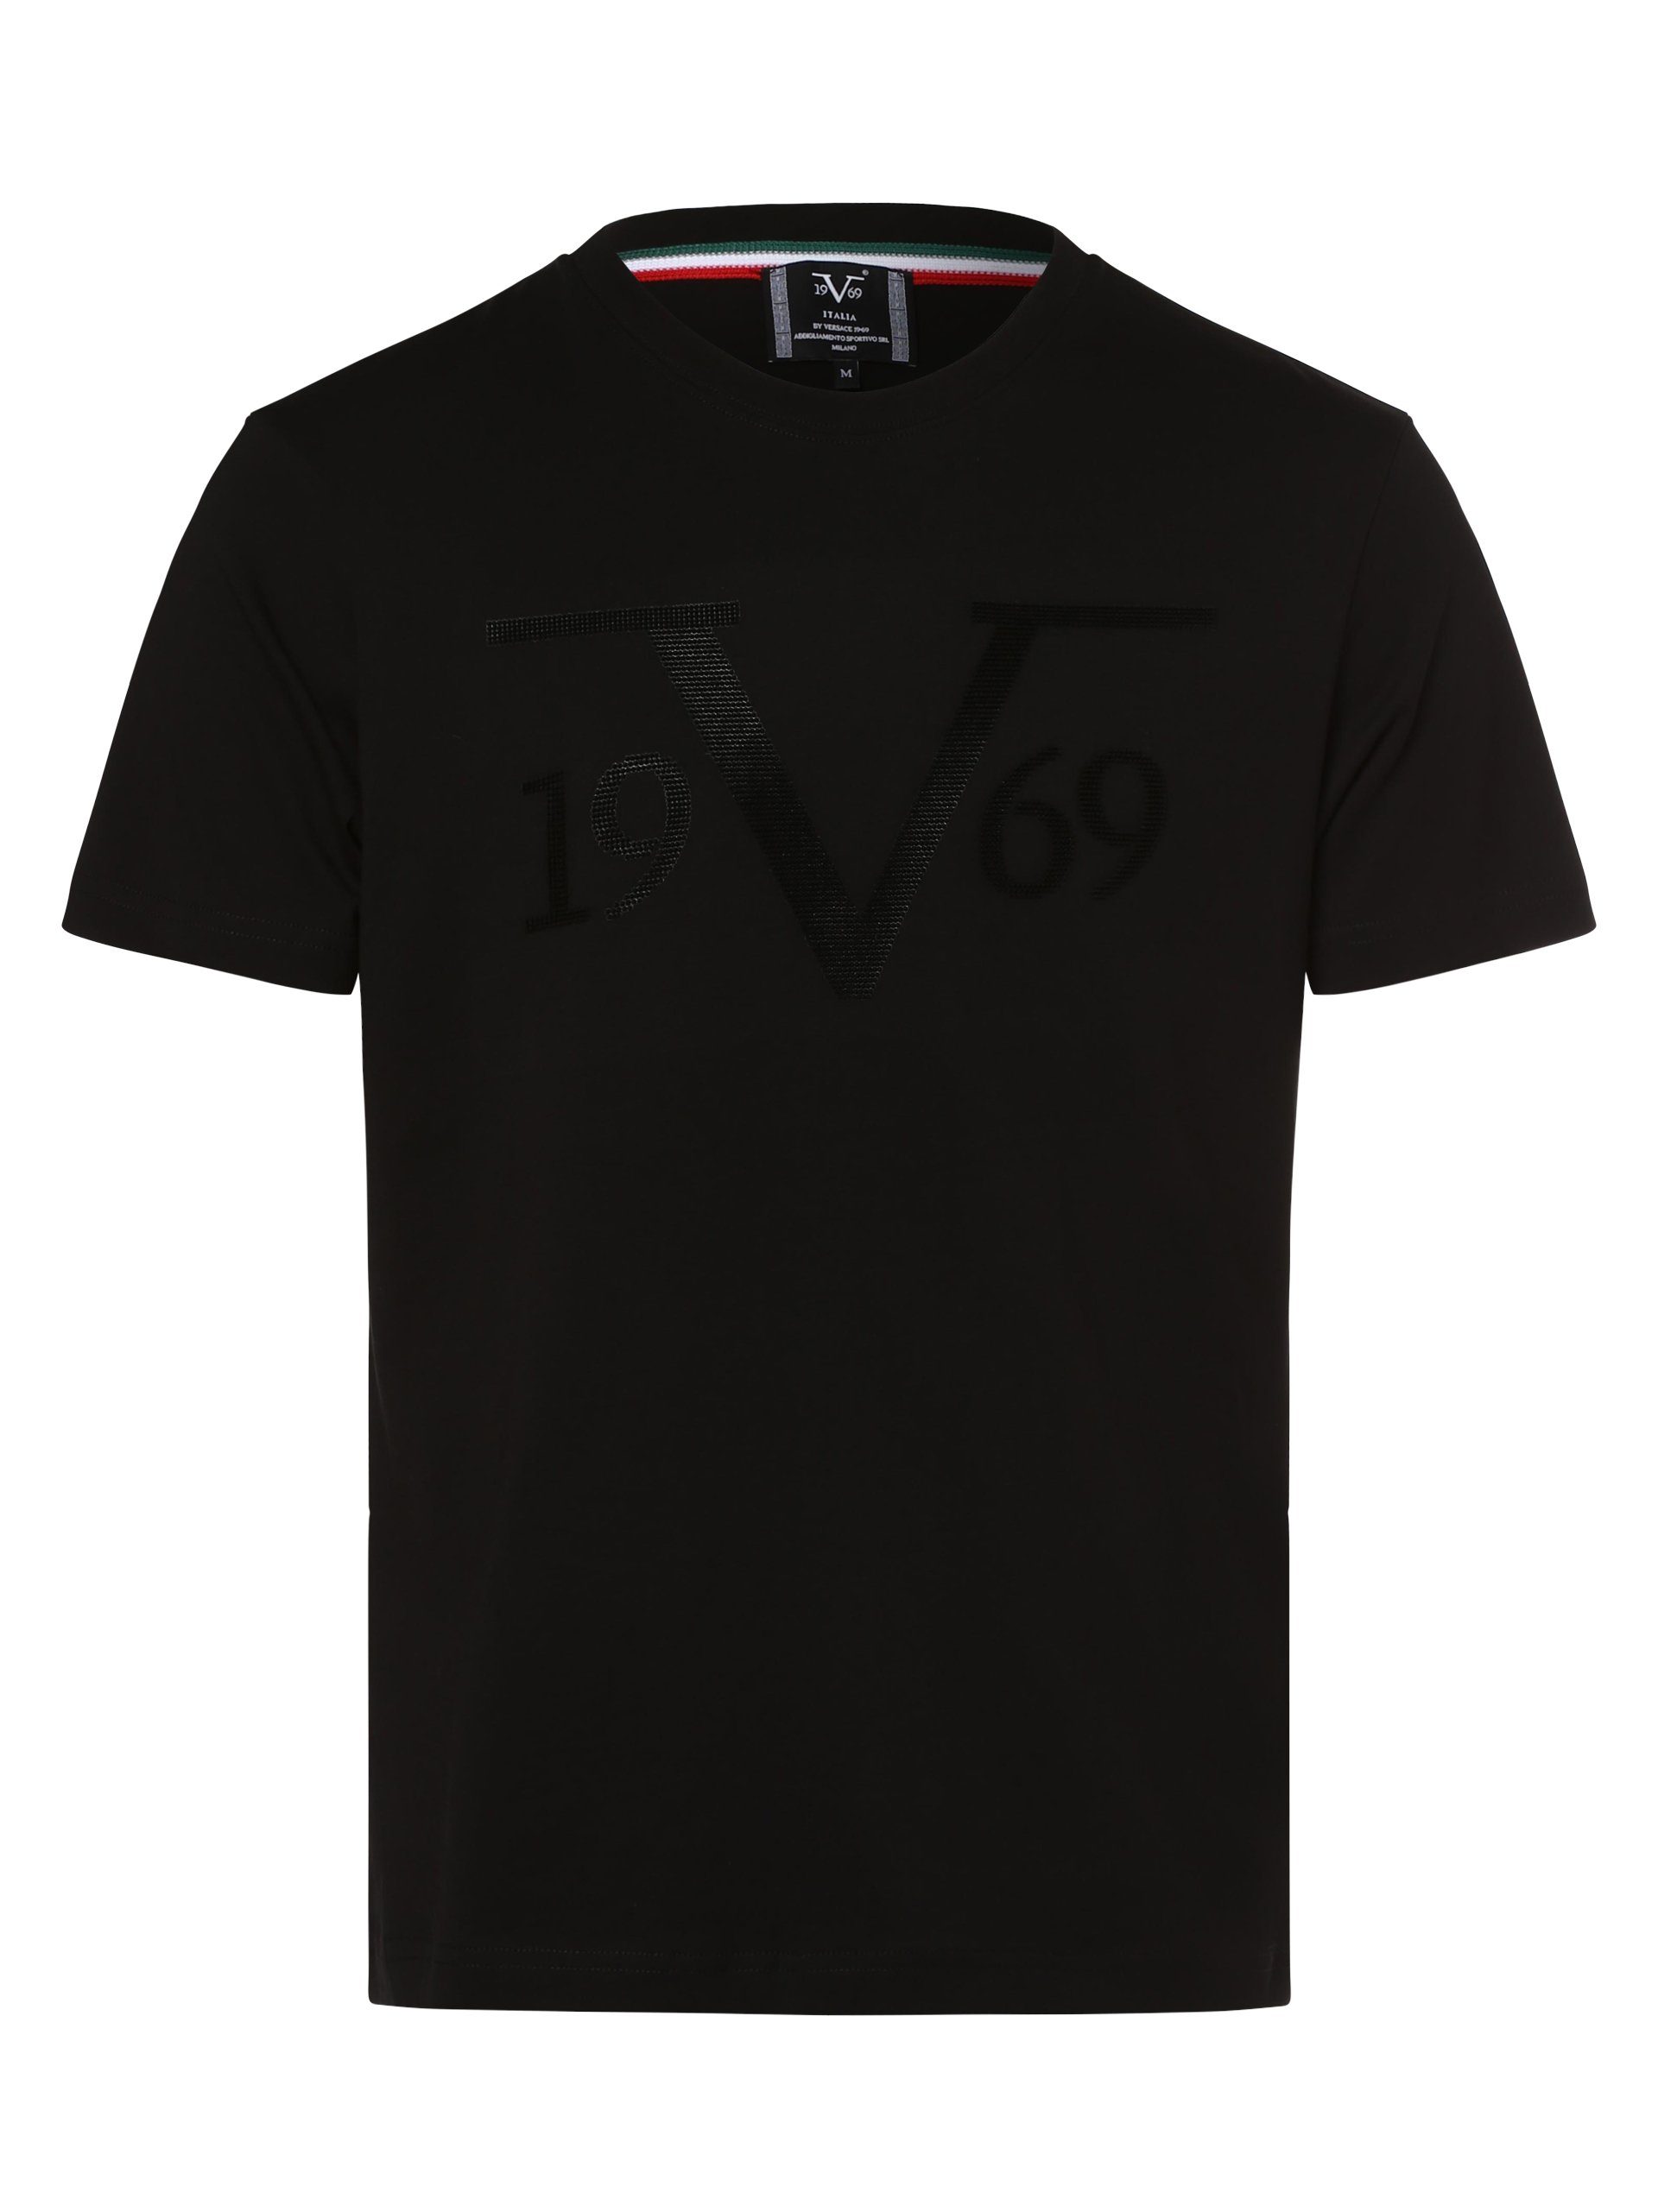 19V69 Italia Italia schwarz by Nilo Versace T-Shirt 19V69